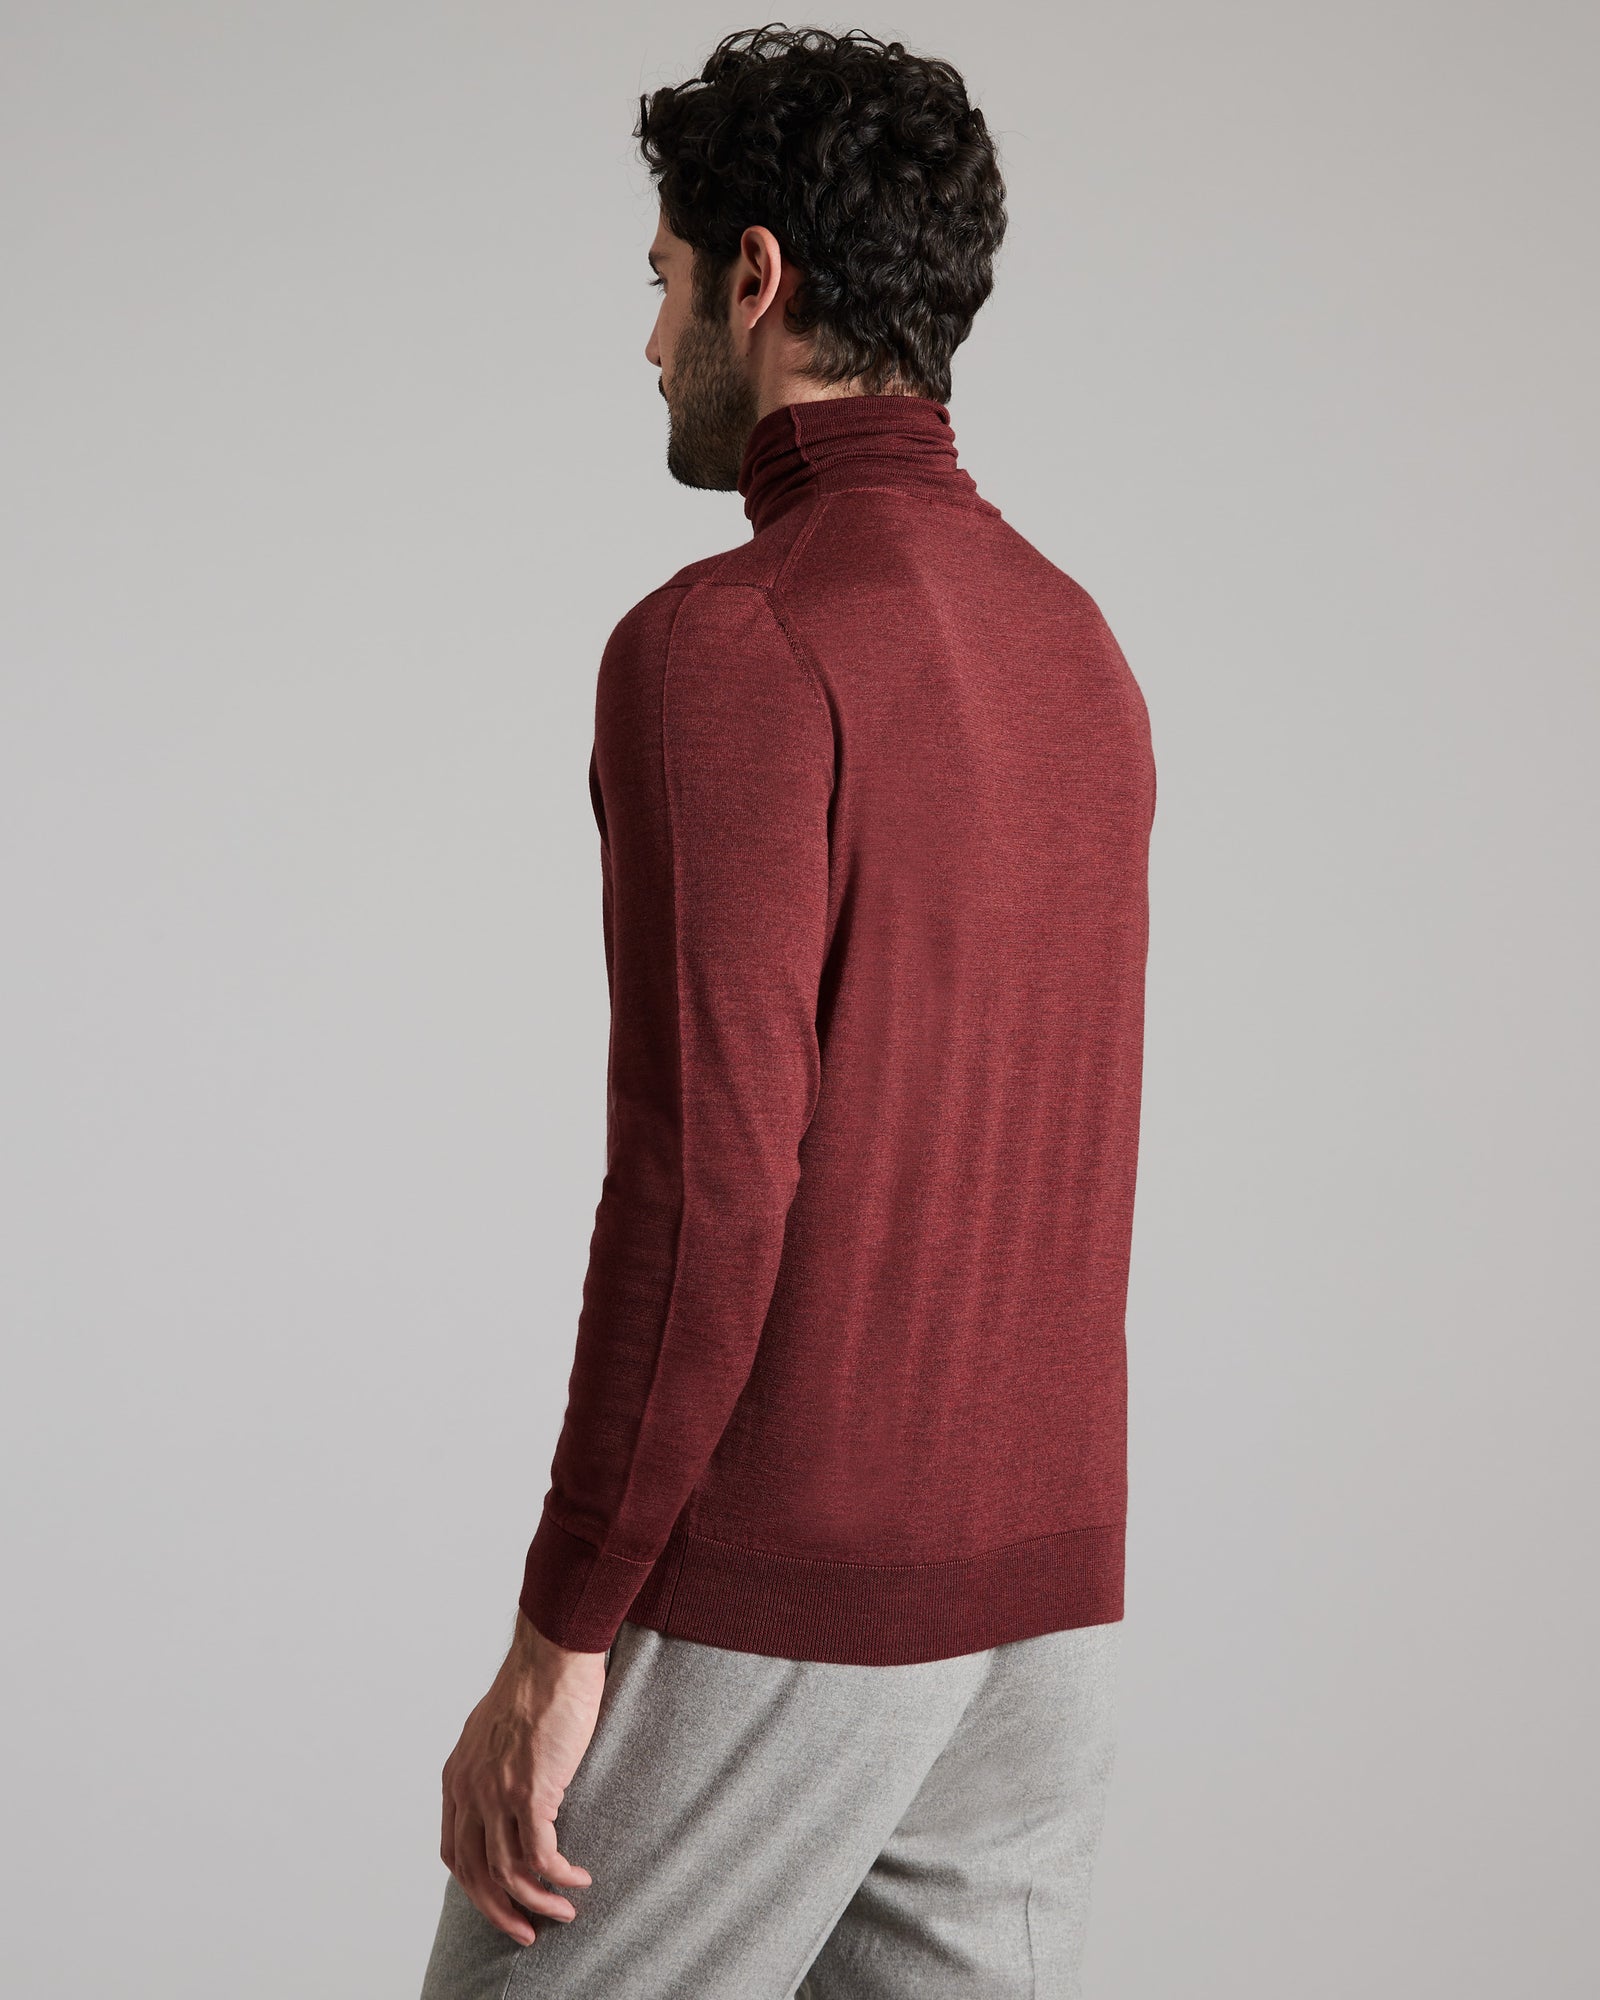 Bordeaux cashmere and silk men's turtleneck sweater